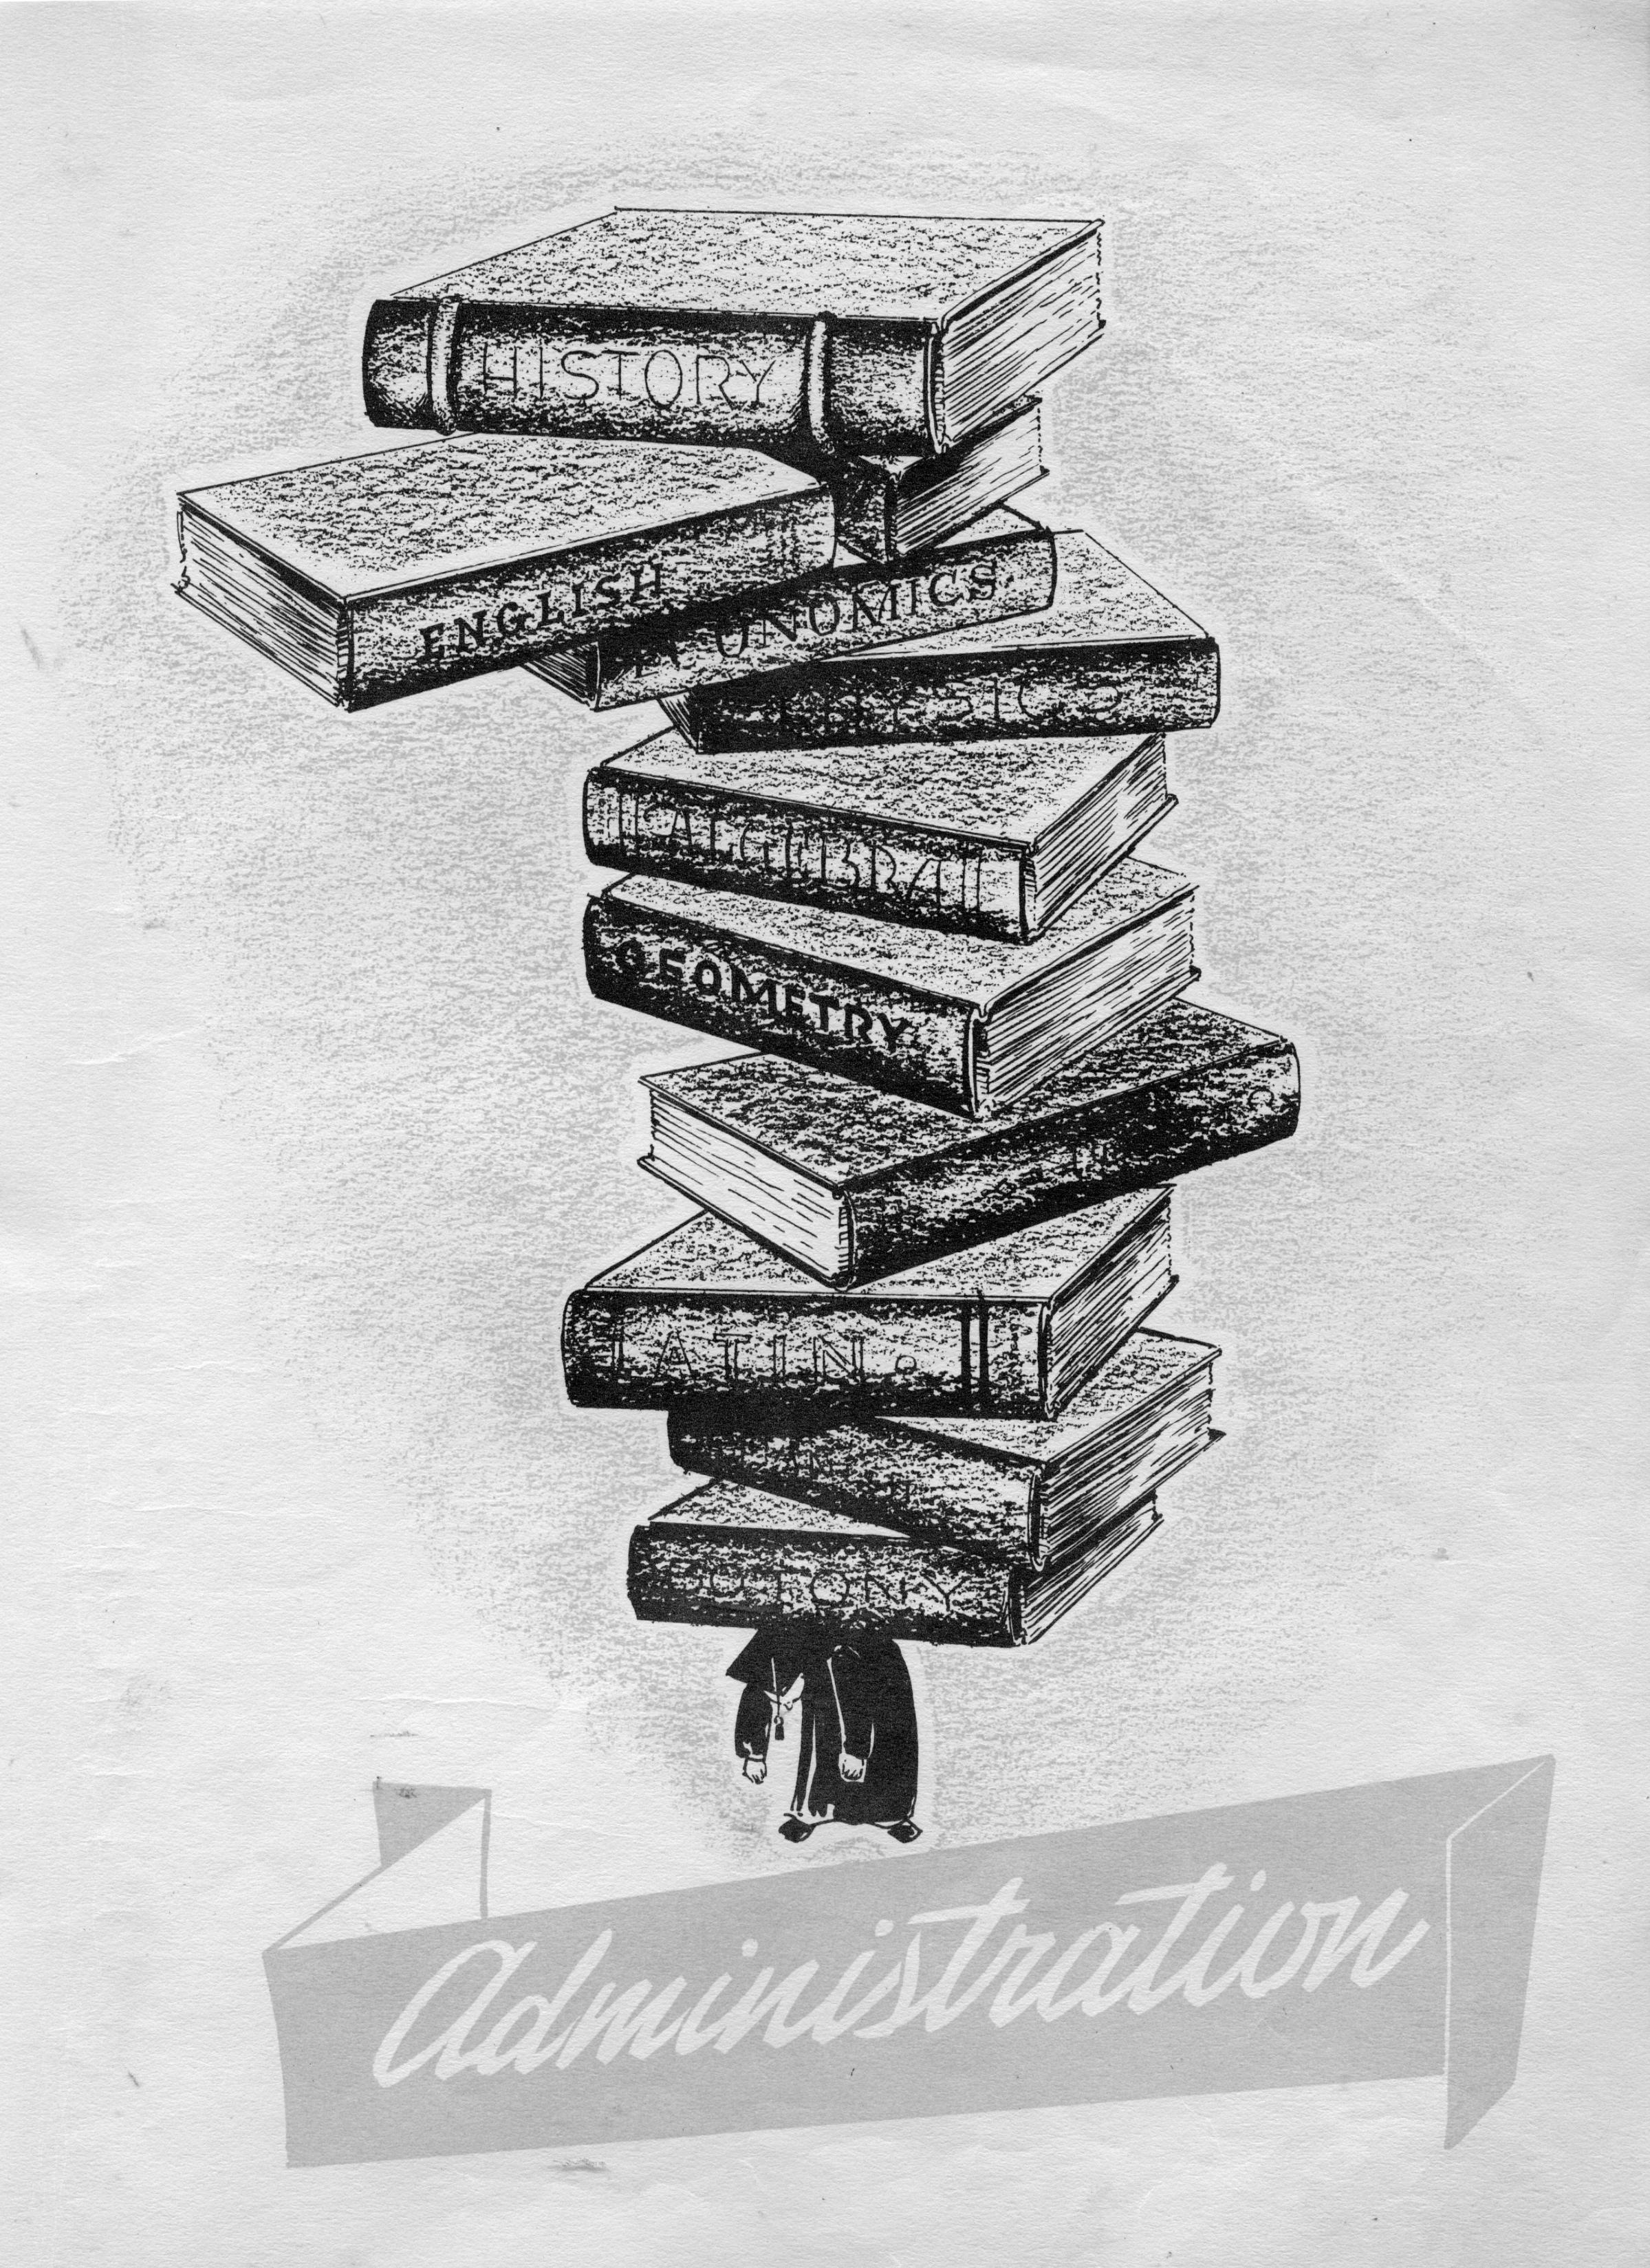 Administration-Lakelander 1948 Yearbook